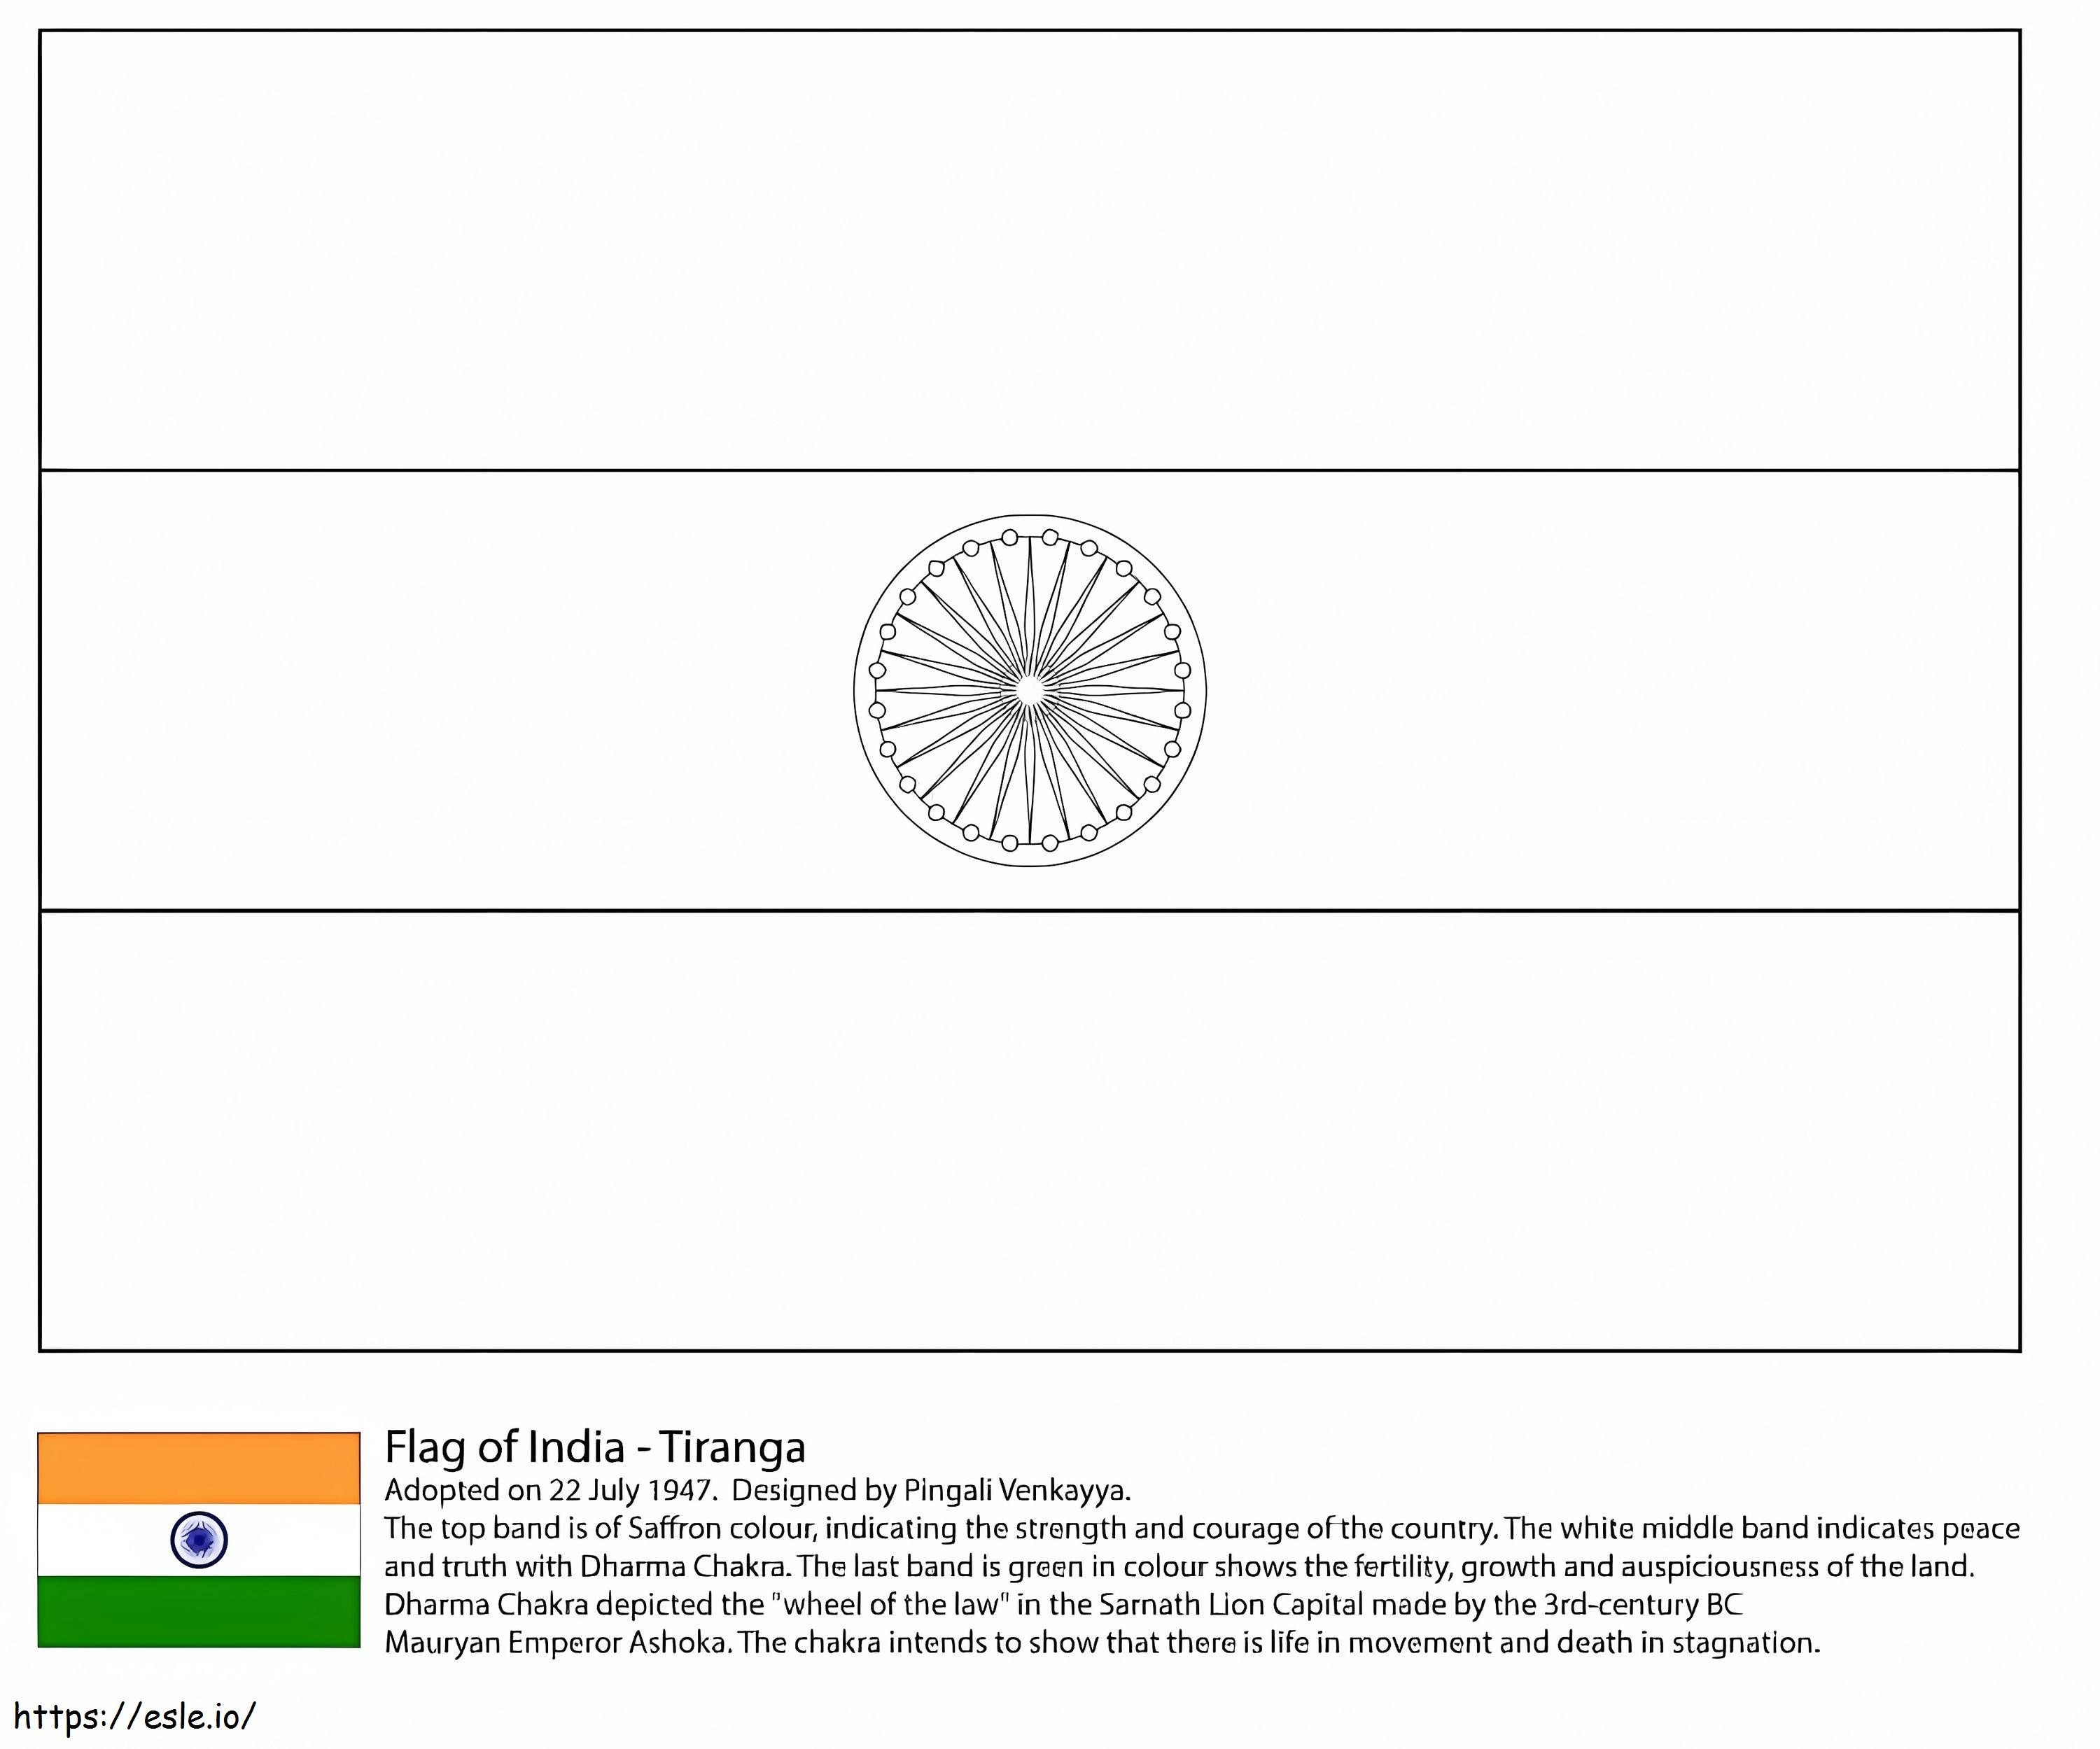 Flaga Indii kolorowanka